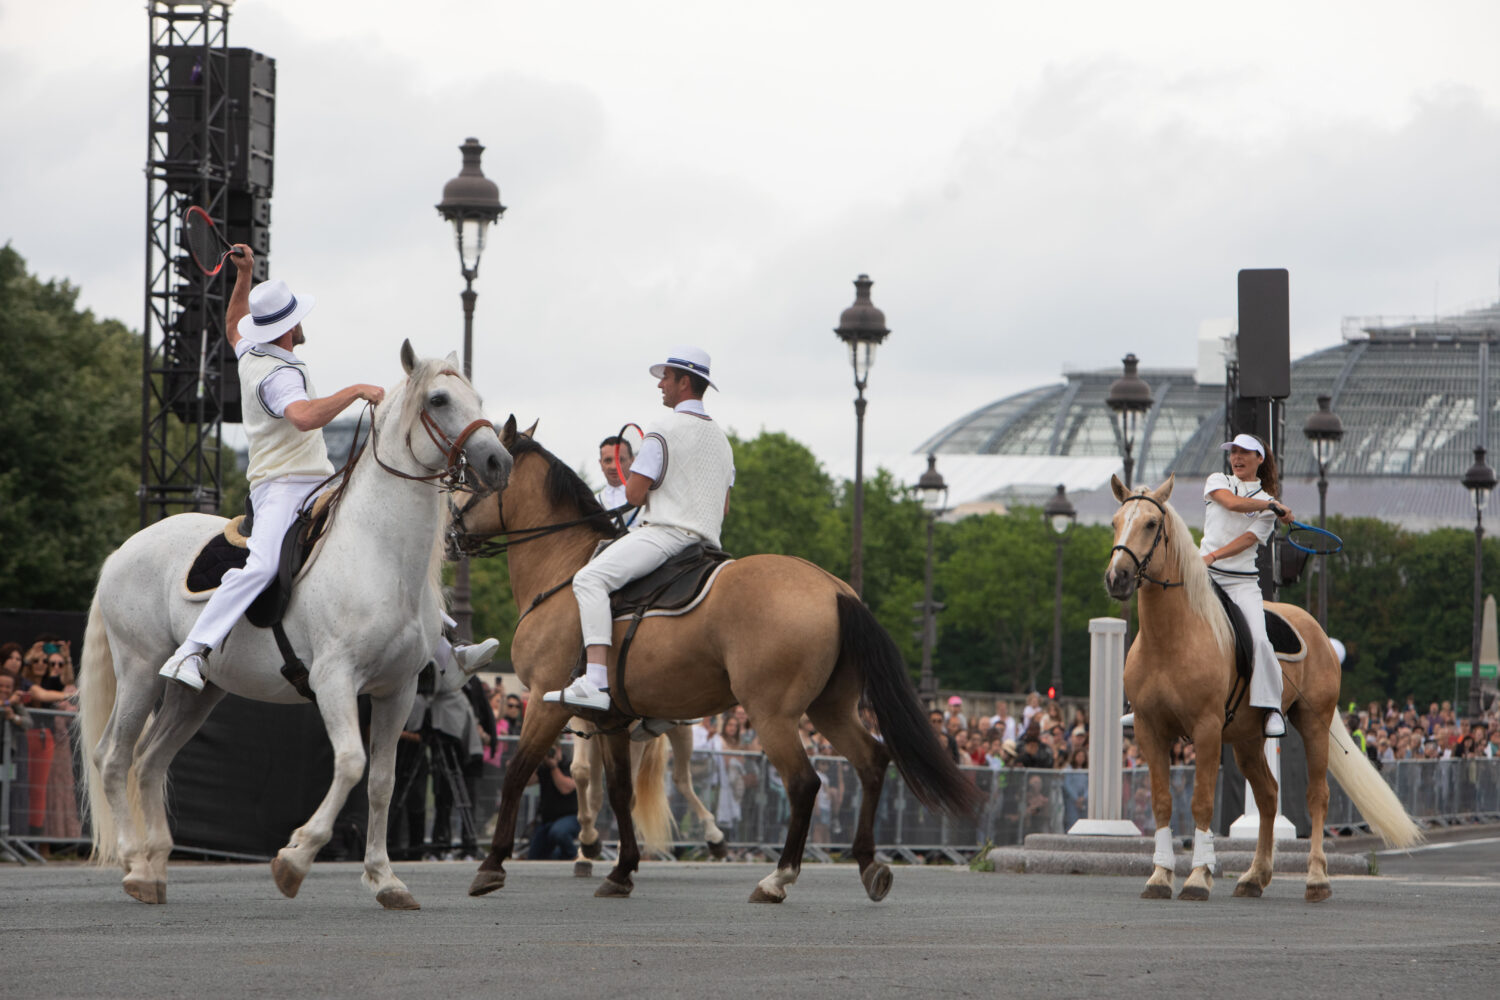 2022 - ELECTRO HORSE PARADE AUX INVALIDES A PARIS